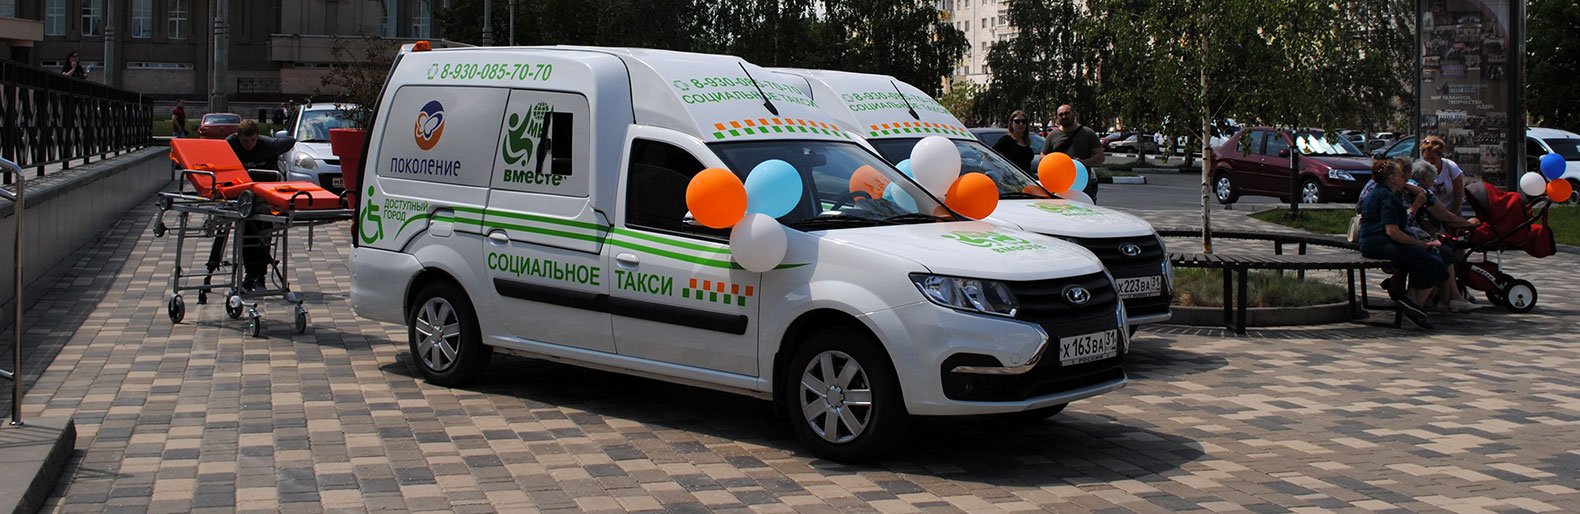 При поддержке фонда «Поколение» в Старом Осколе появится социальное такси